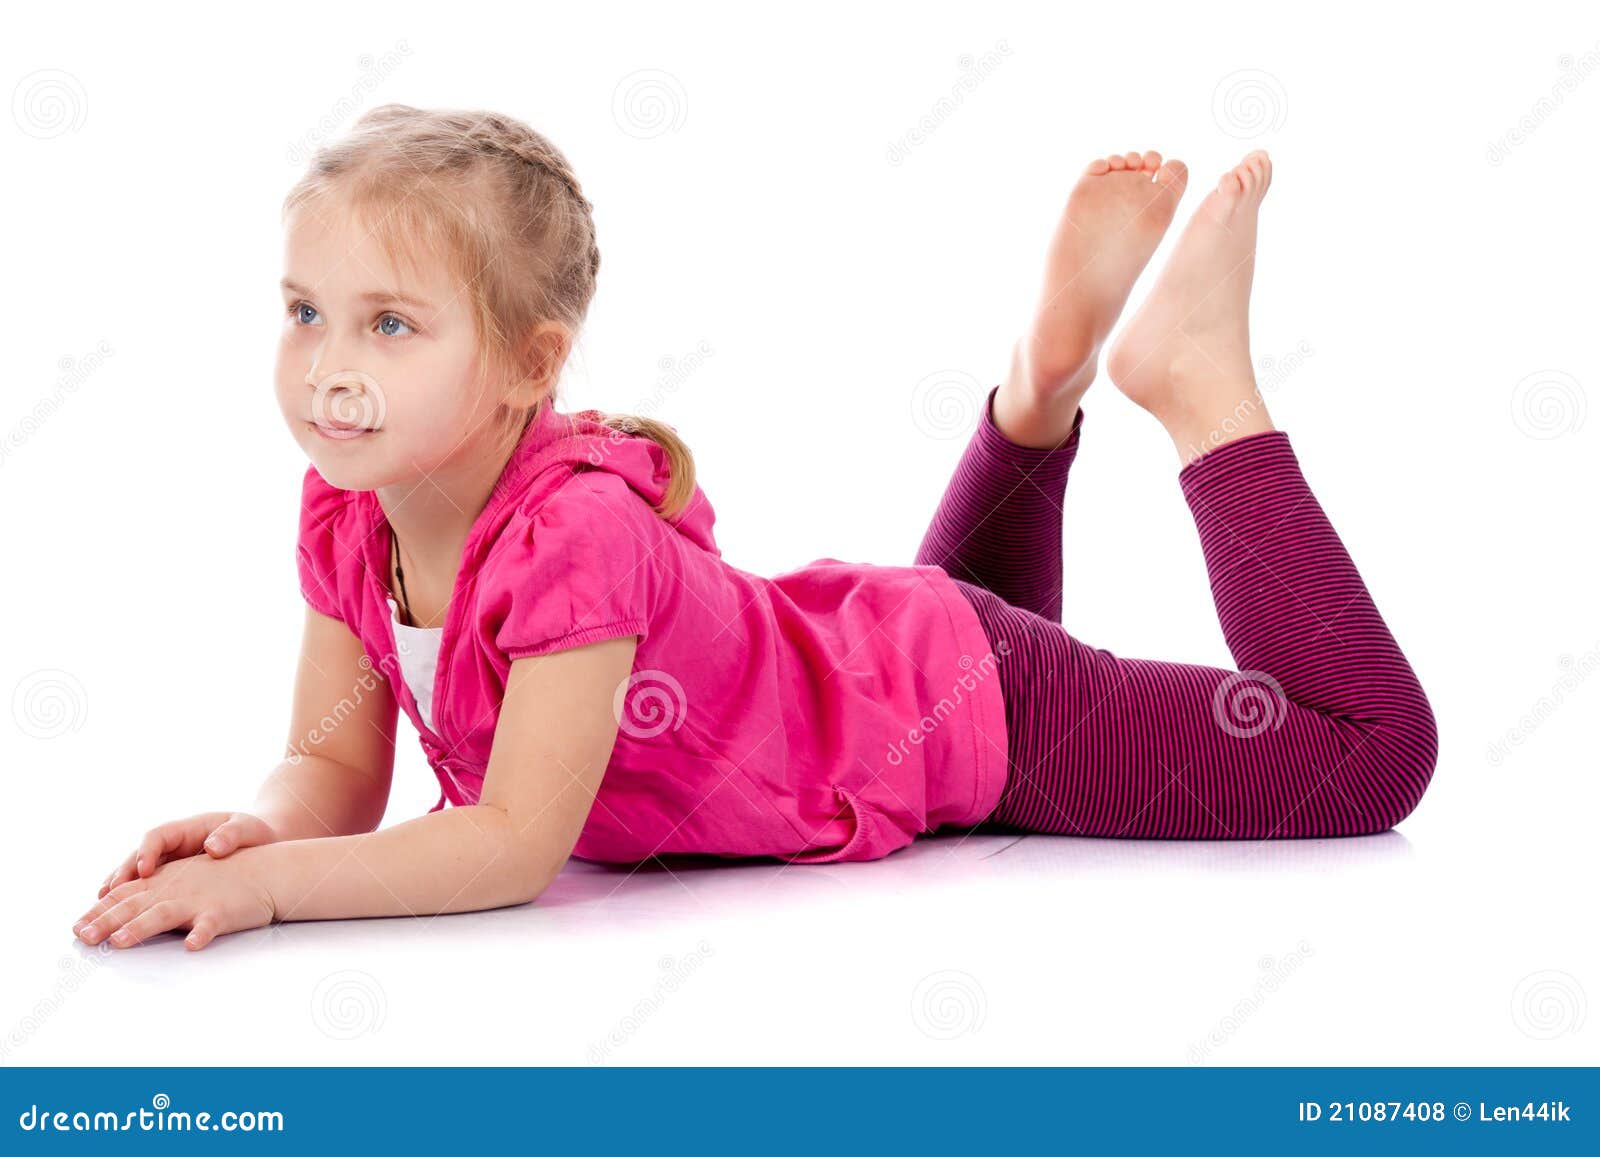 10 лет на коленях. Расставляет ноги ребенок. Девочка лежит на животе. Маленькаяднаочка с раздвинутыми ногами. Дети раздвигают ноги.